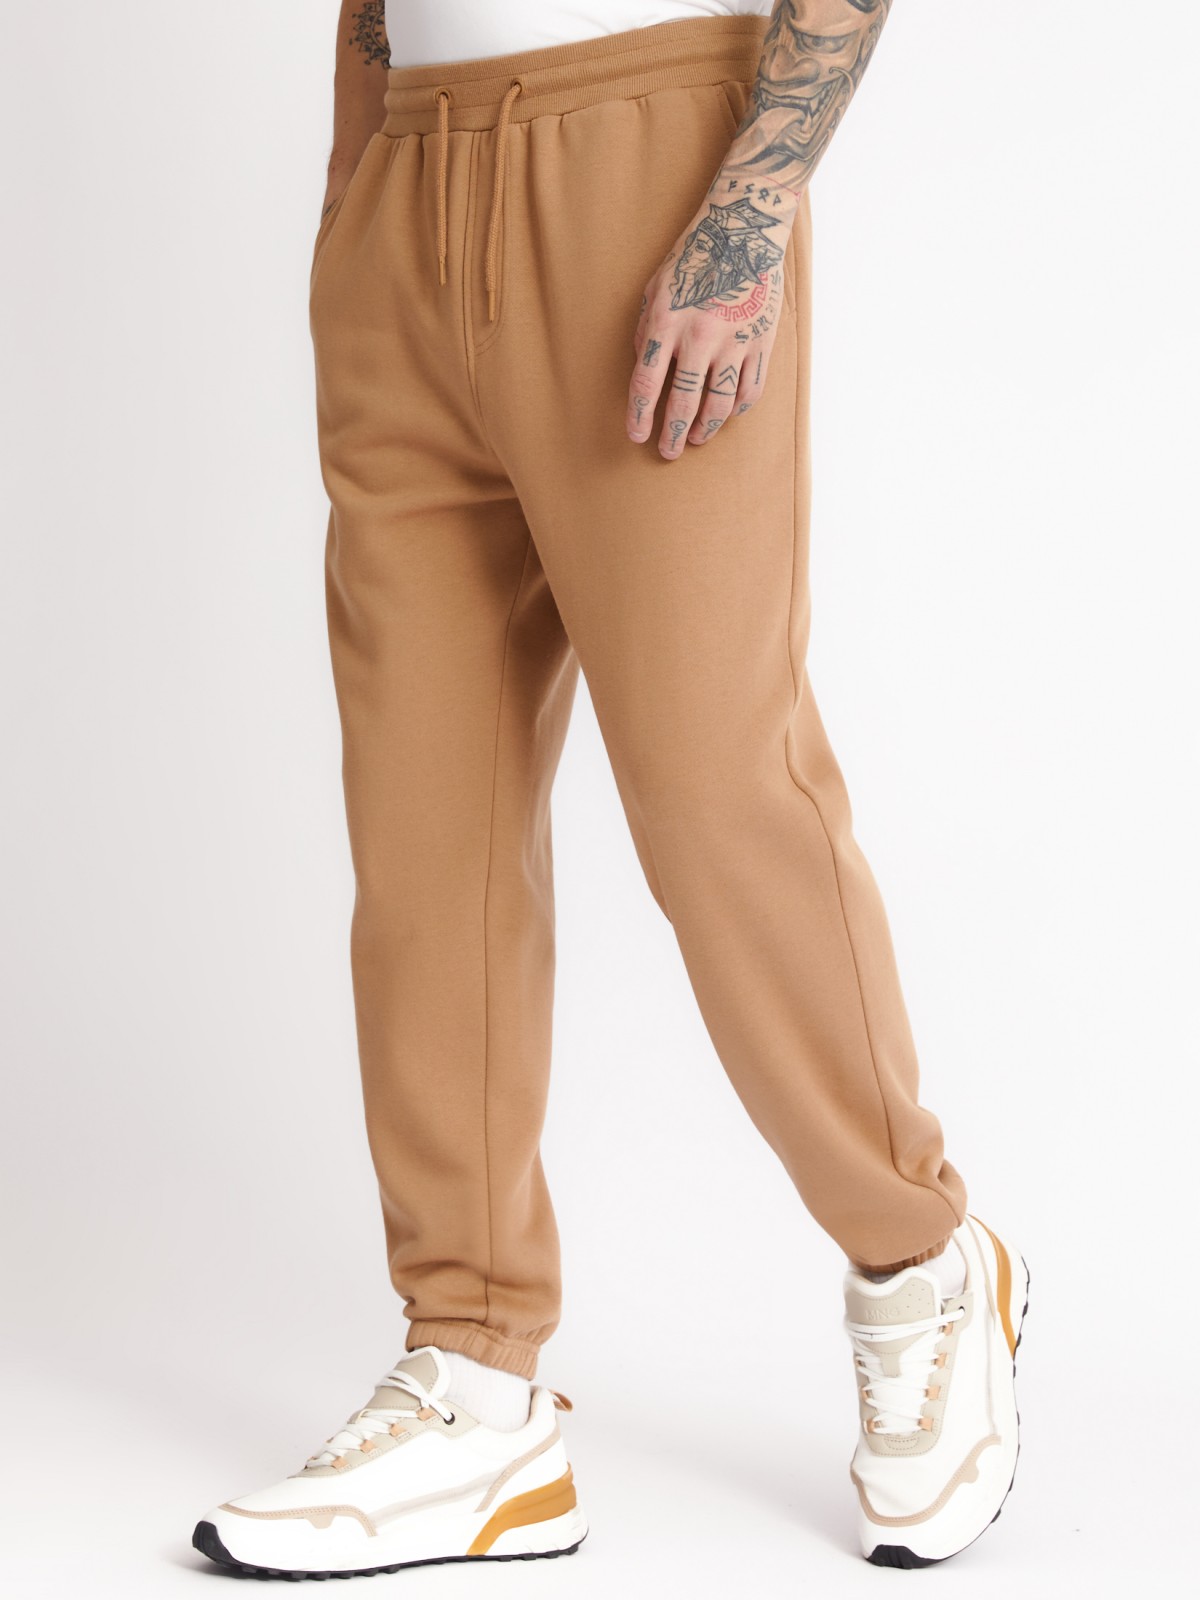 Утеплённые трикотажные брюки-джоггеры в спортивном стиле zolla 213327675022, цвет бежевый, размер XS - фото 2